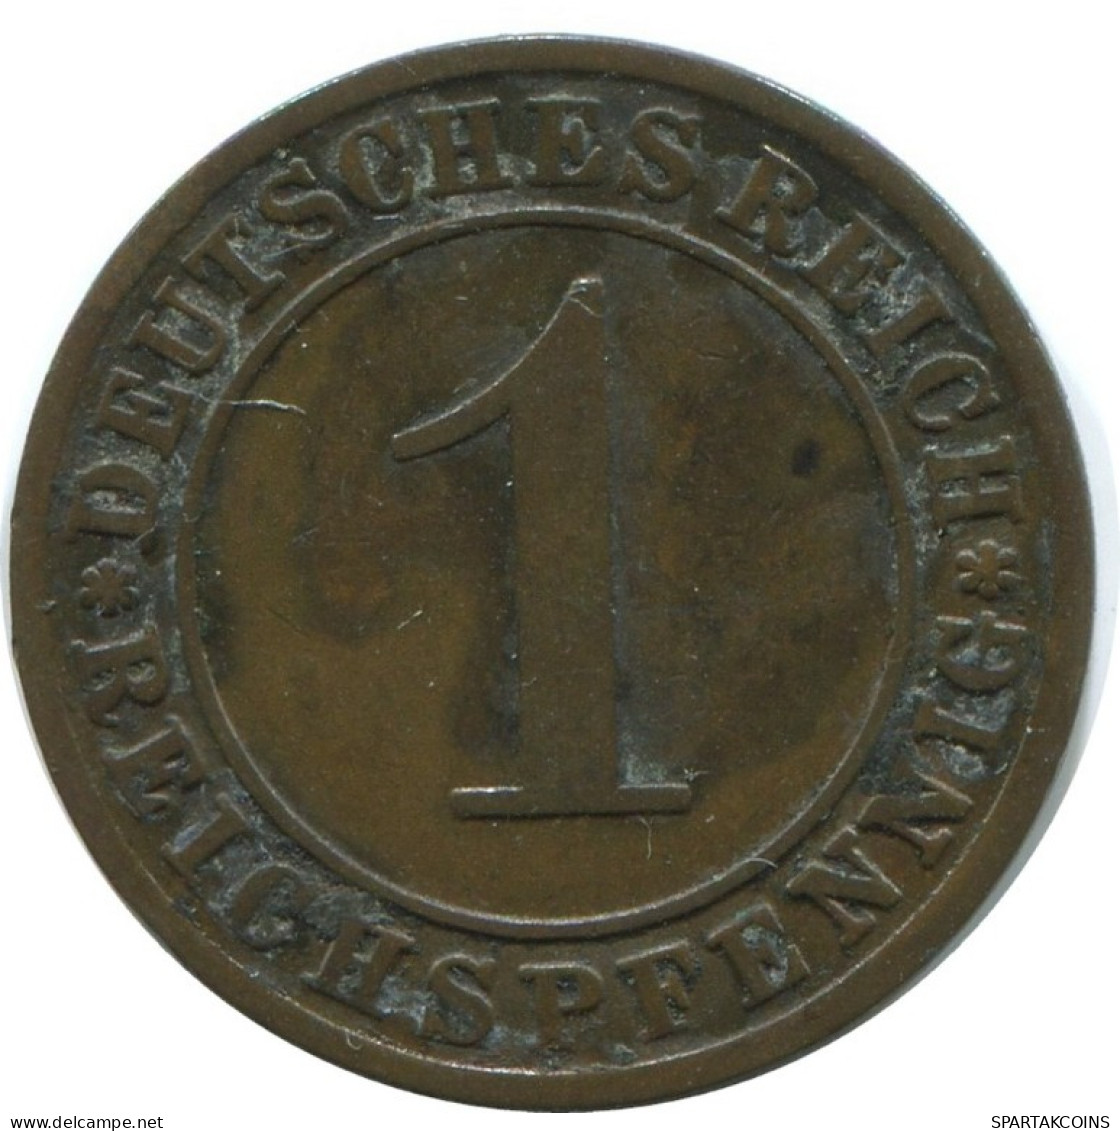 1 REICHSPFENNIG 1928 G GERMANY Coin #AE224.U.A - 1 Rentenpfennig & 1 Reichspfennig